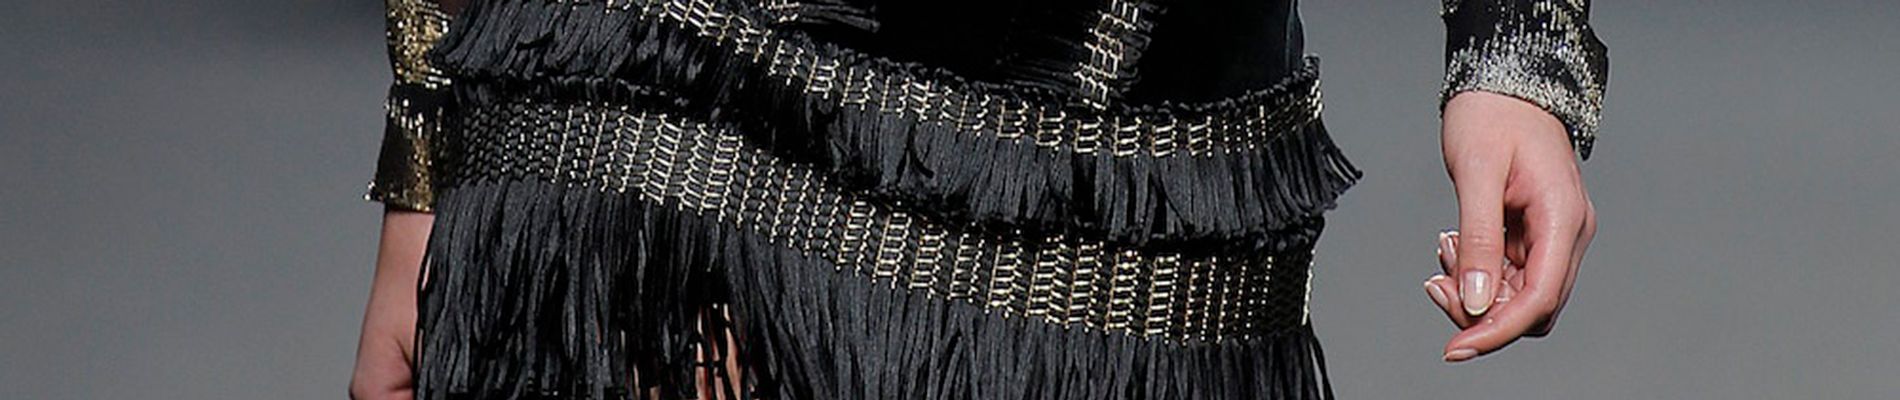 Aplicaciones de malla metálica de acero inoxidable en una falda de la diseñadora Teresa Helbig